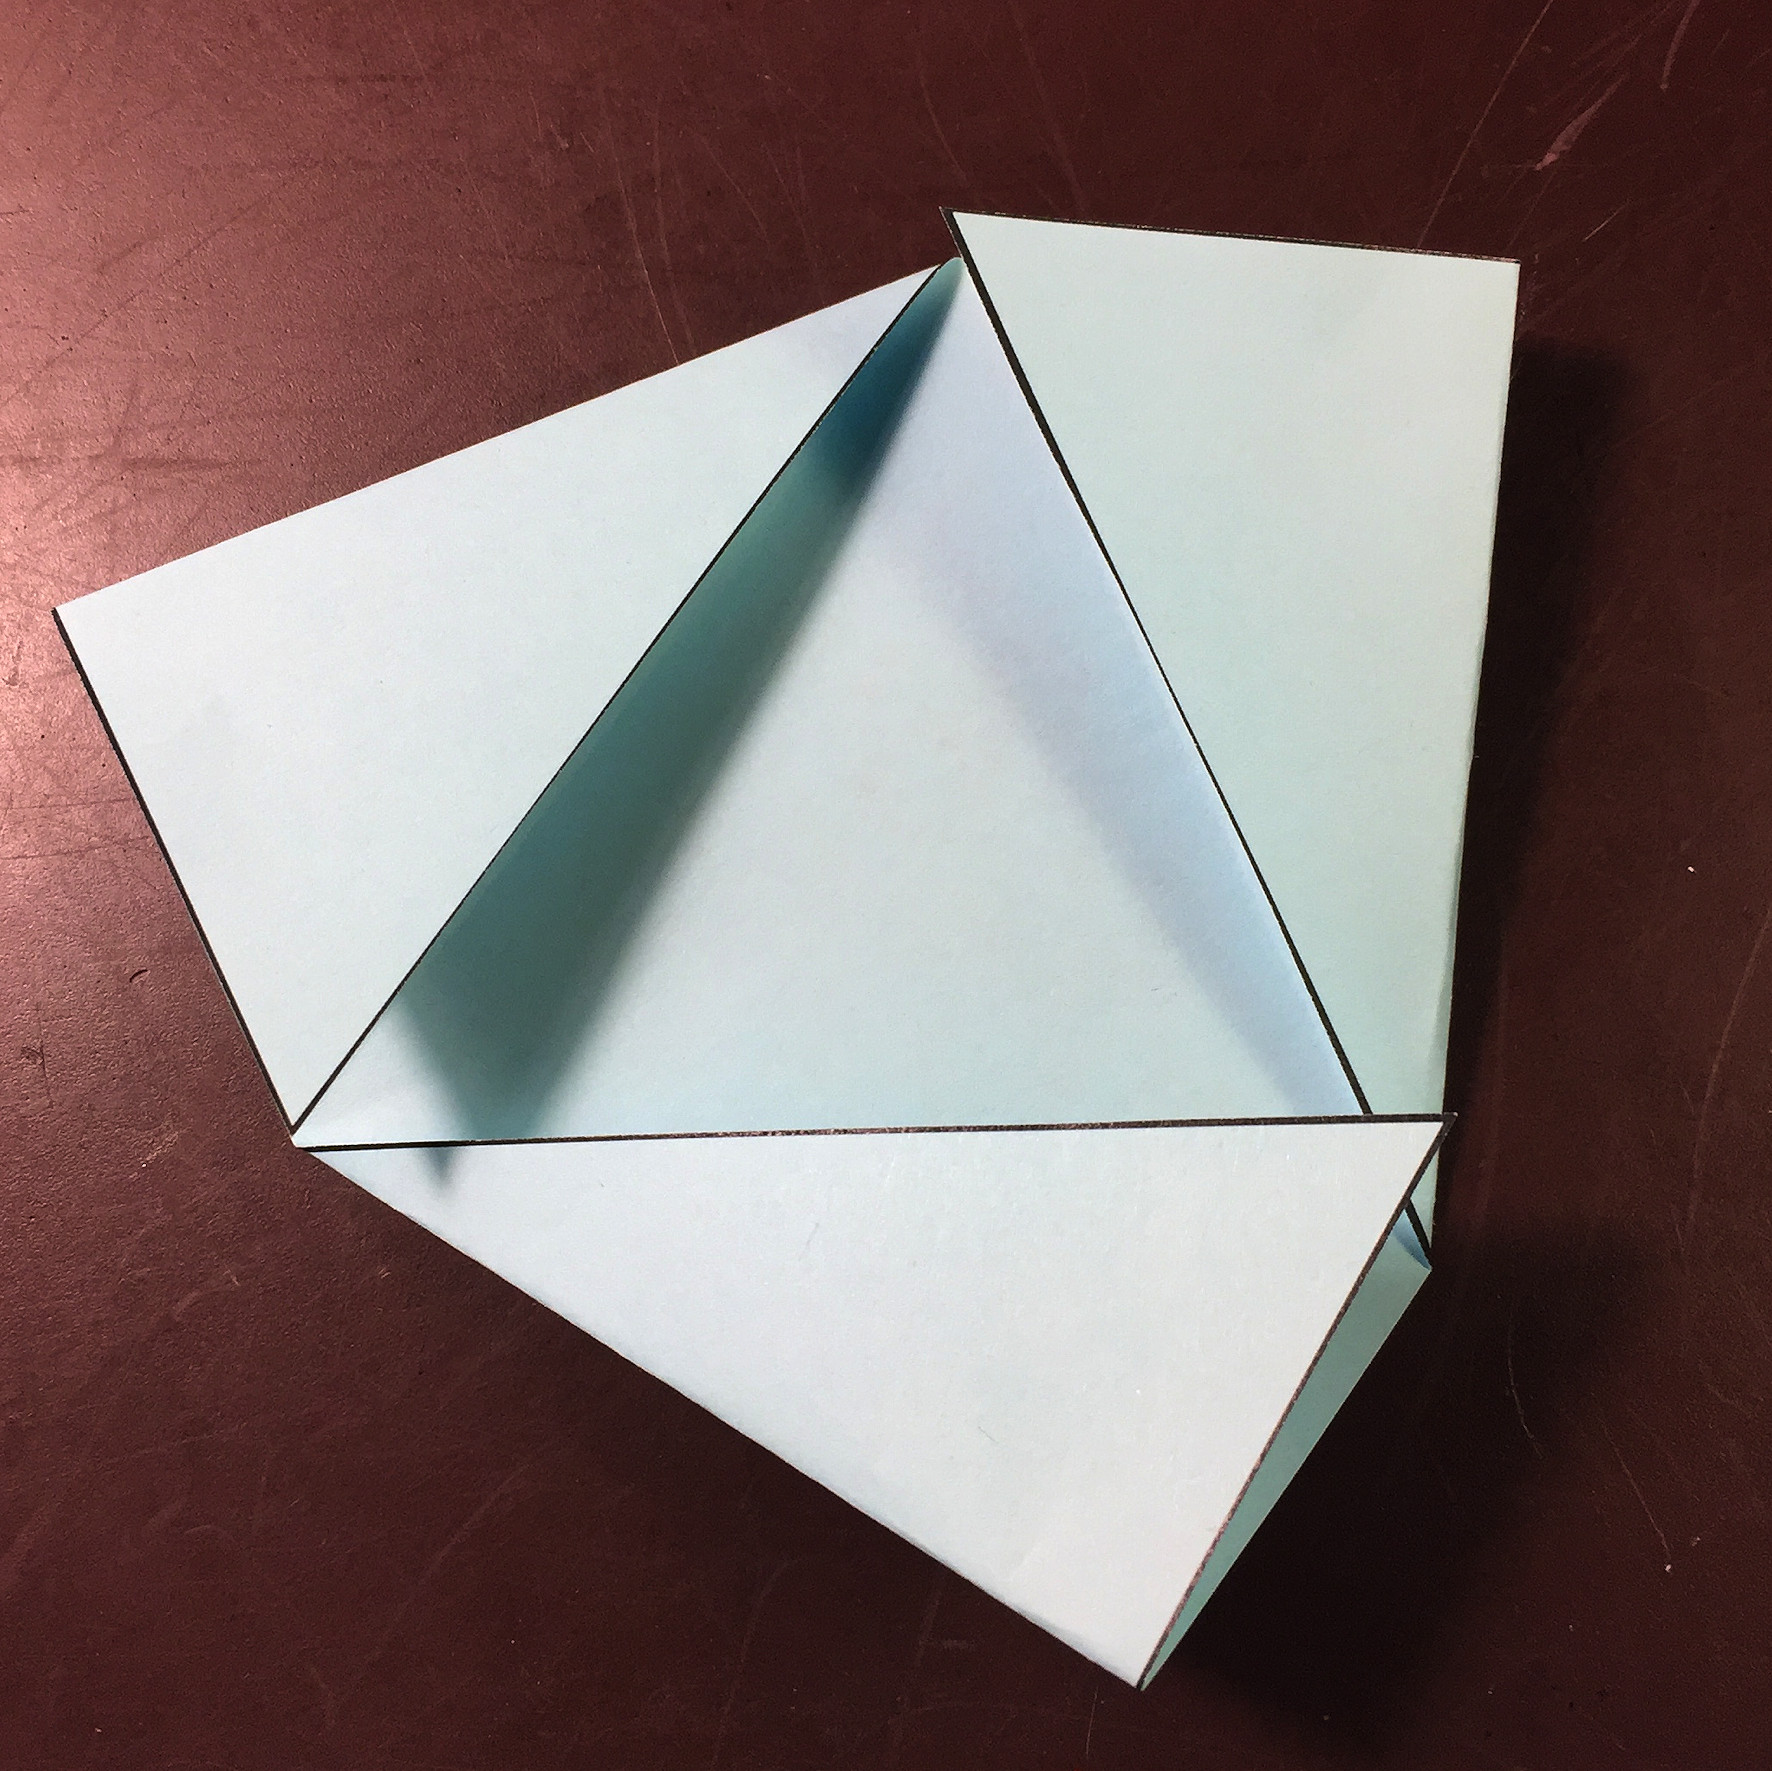 Ein Bild, das Papier, Papierprodukt, Papierkunst, Origamipapier enthält.

Automatisch generierte Beschreibung